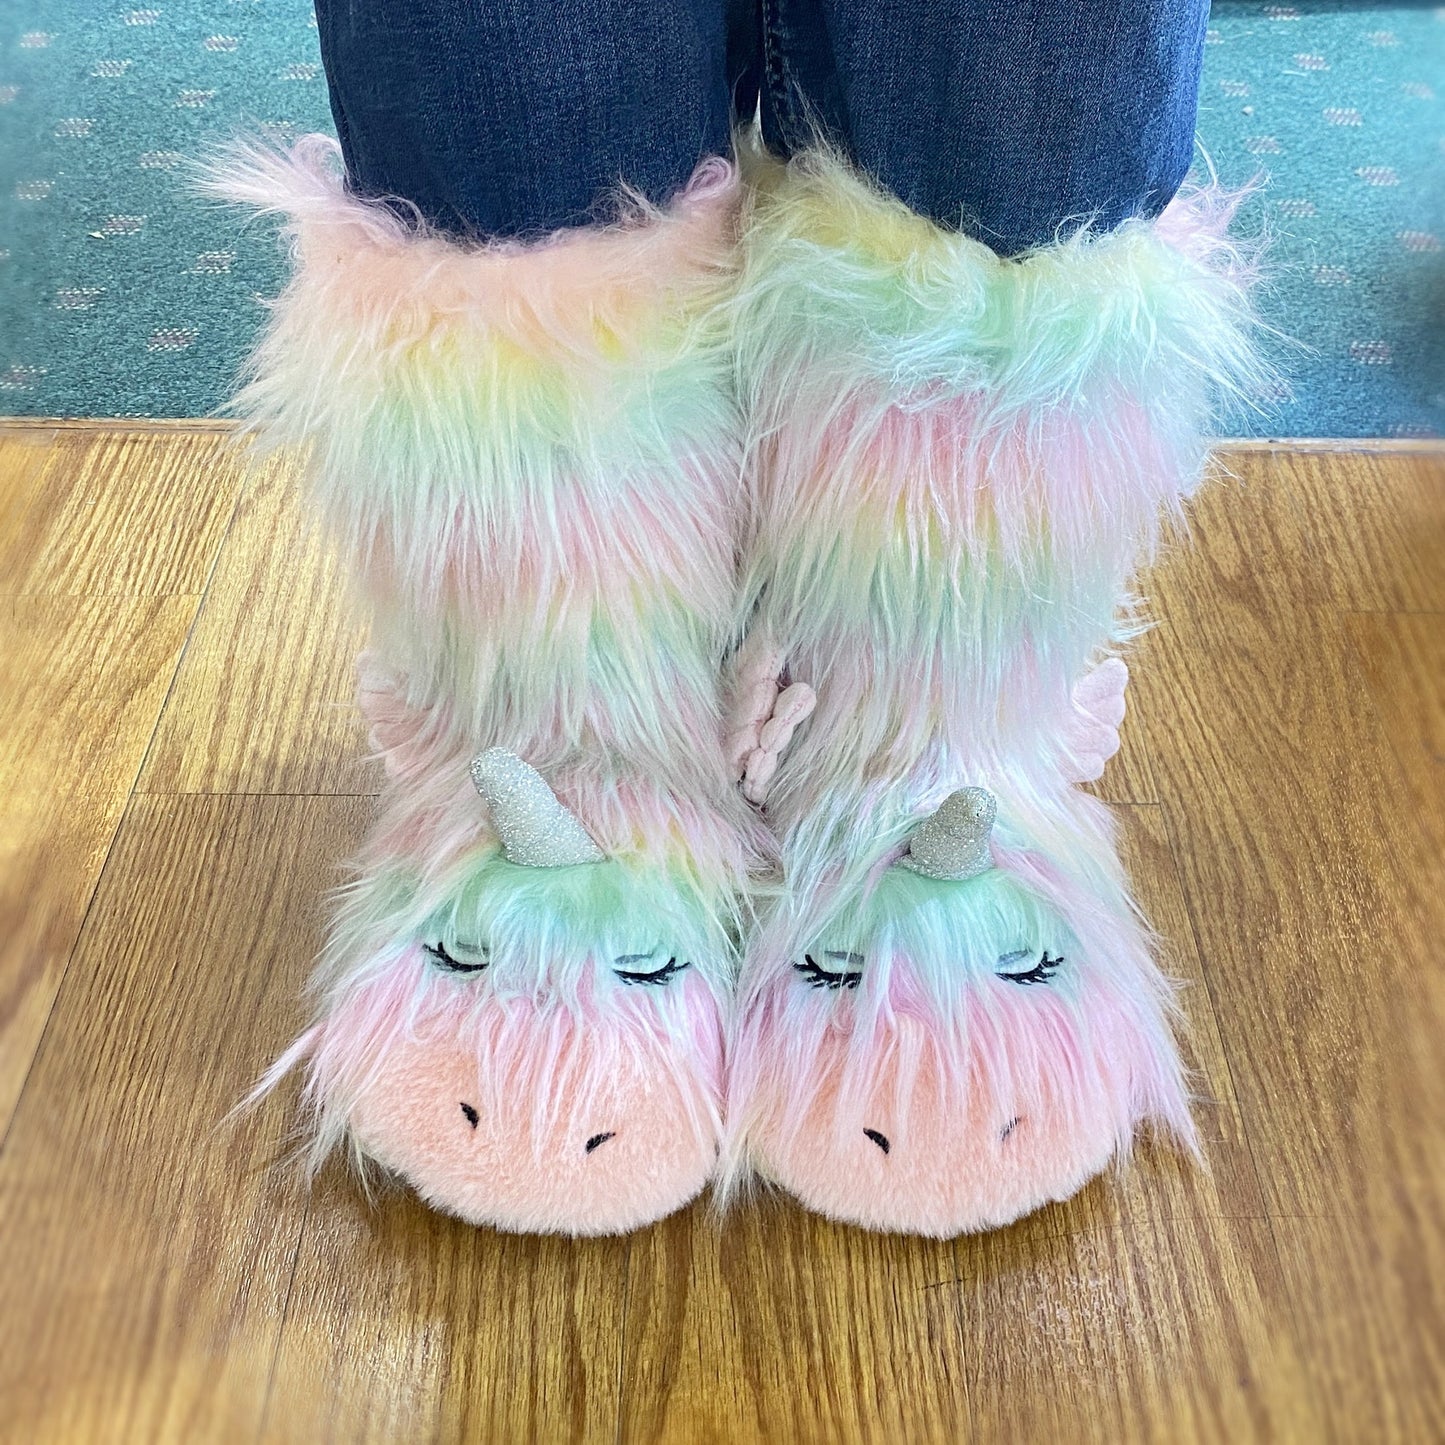 Fuzzy Cozy Warm Rainbow Unicorn Slippers - Plush Slipper